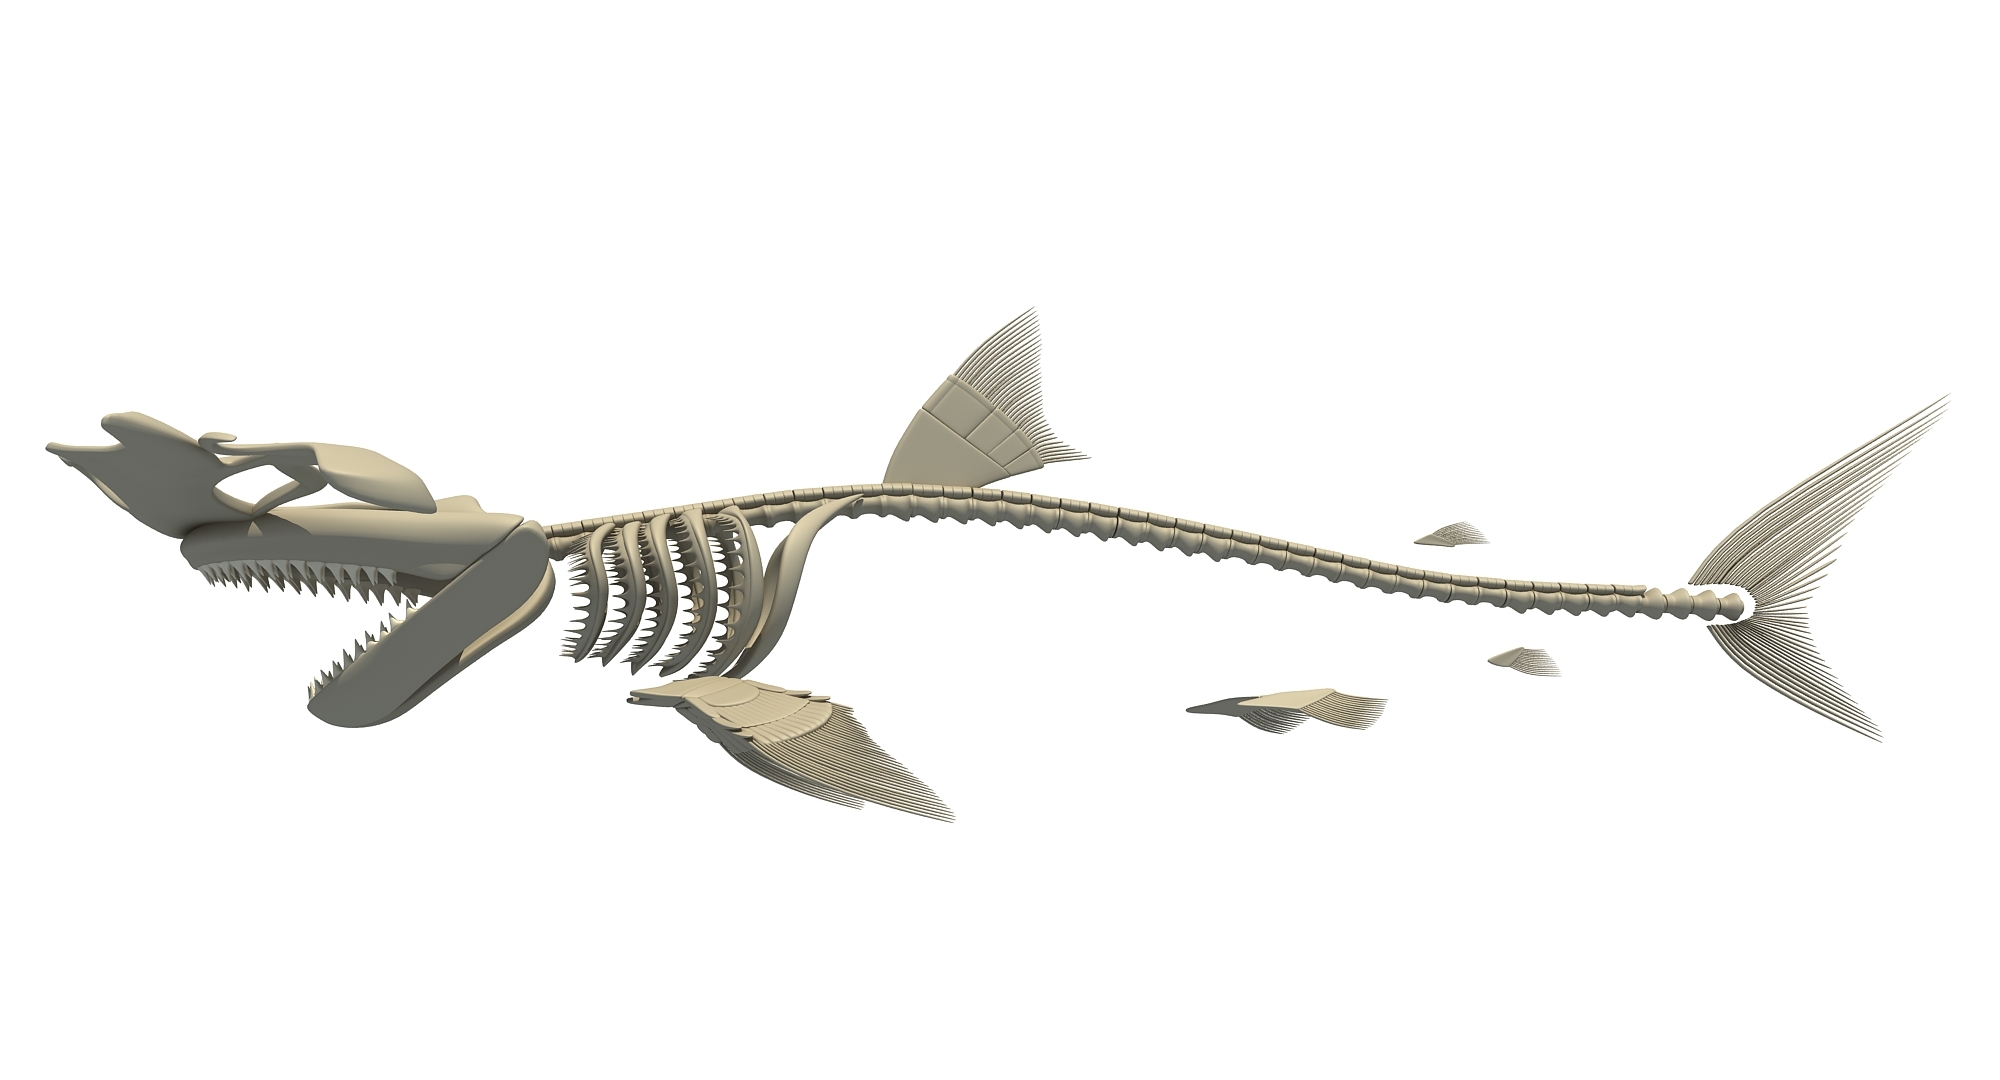 鲨鱼骨骼图-图库-五毛网